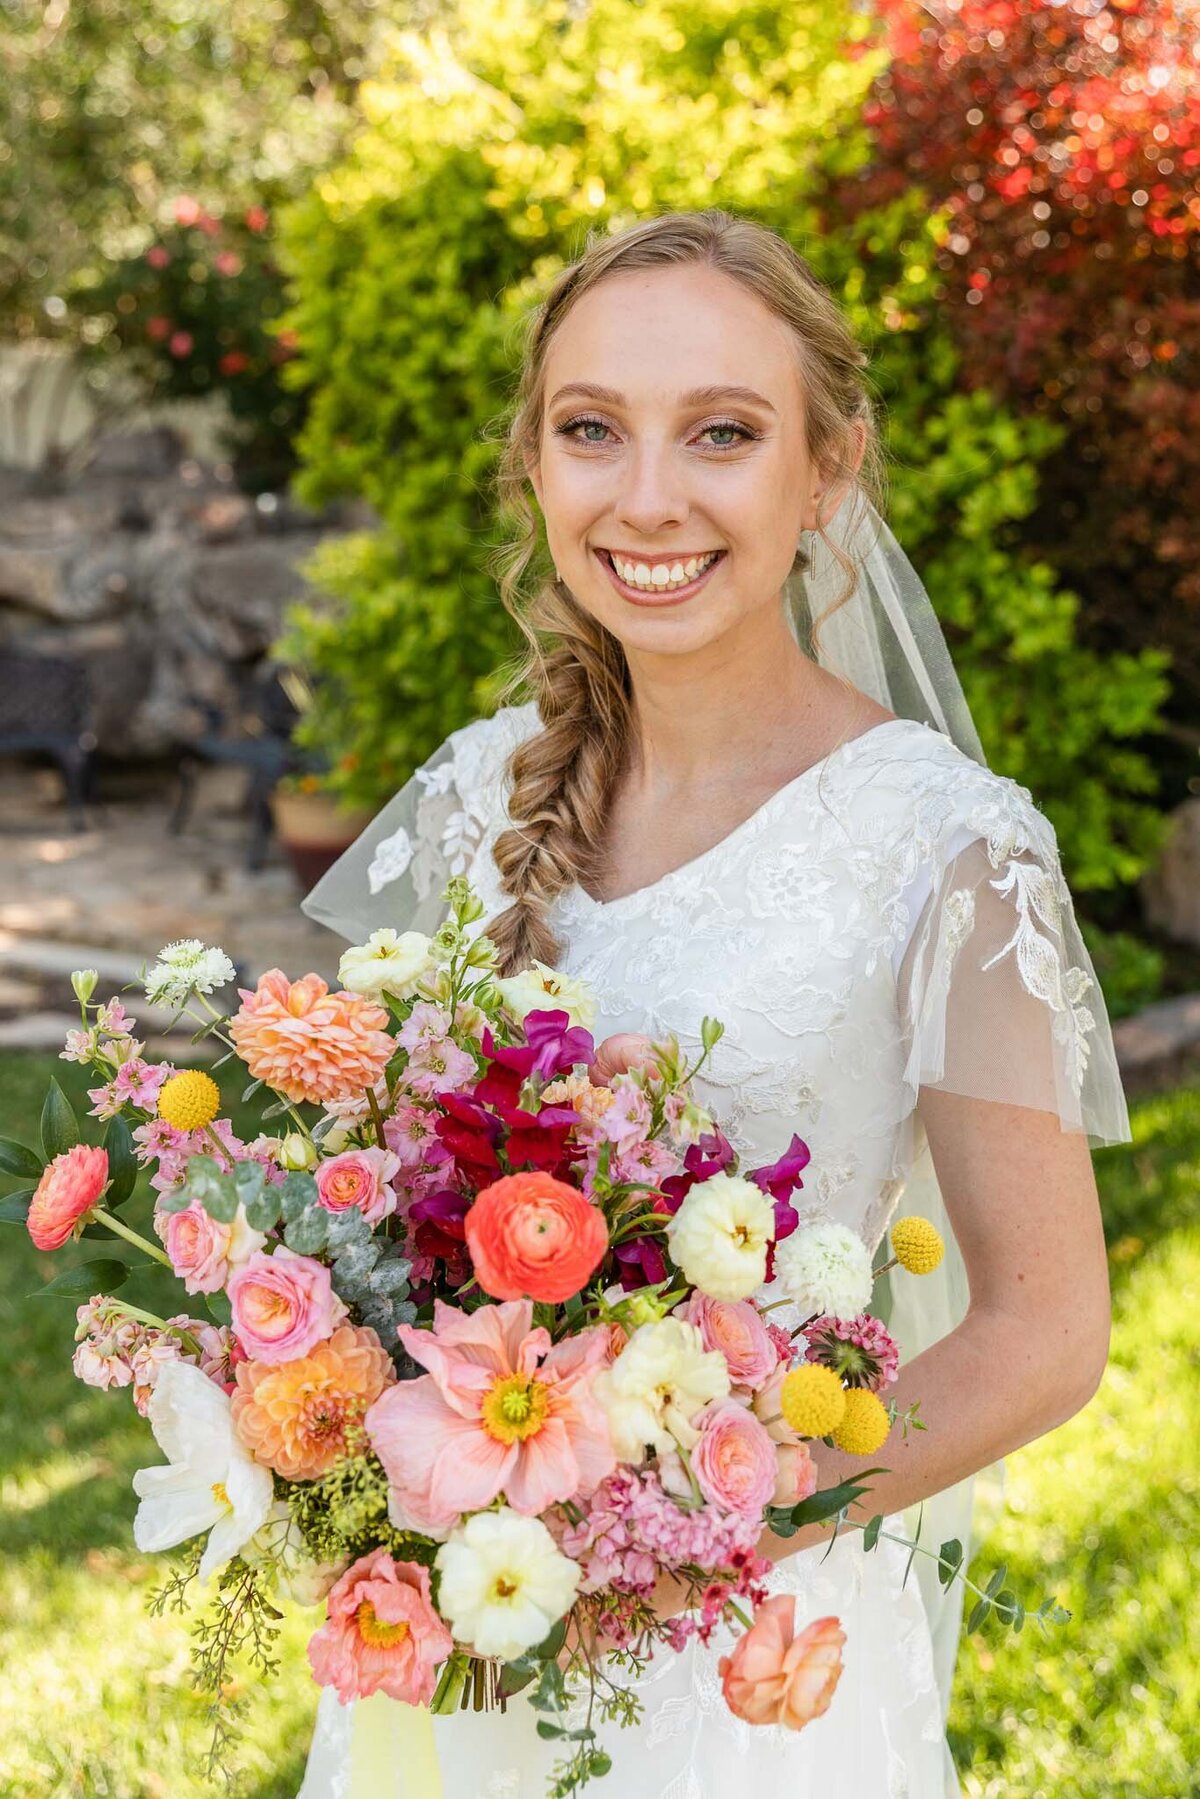 Bride holding colorful bridal bouquet.